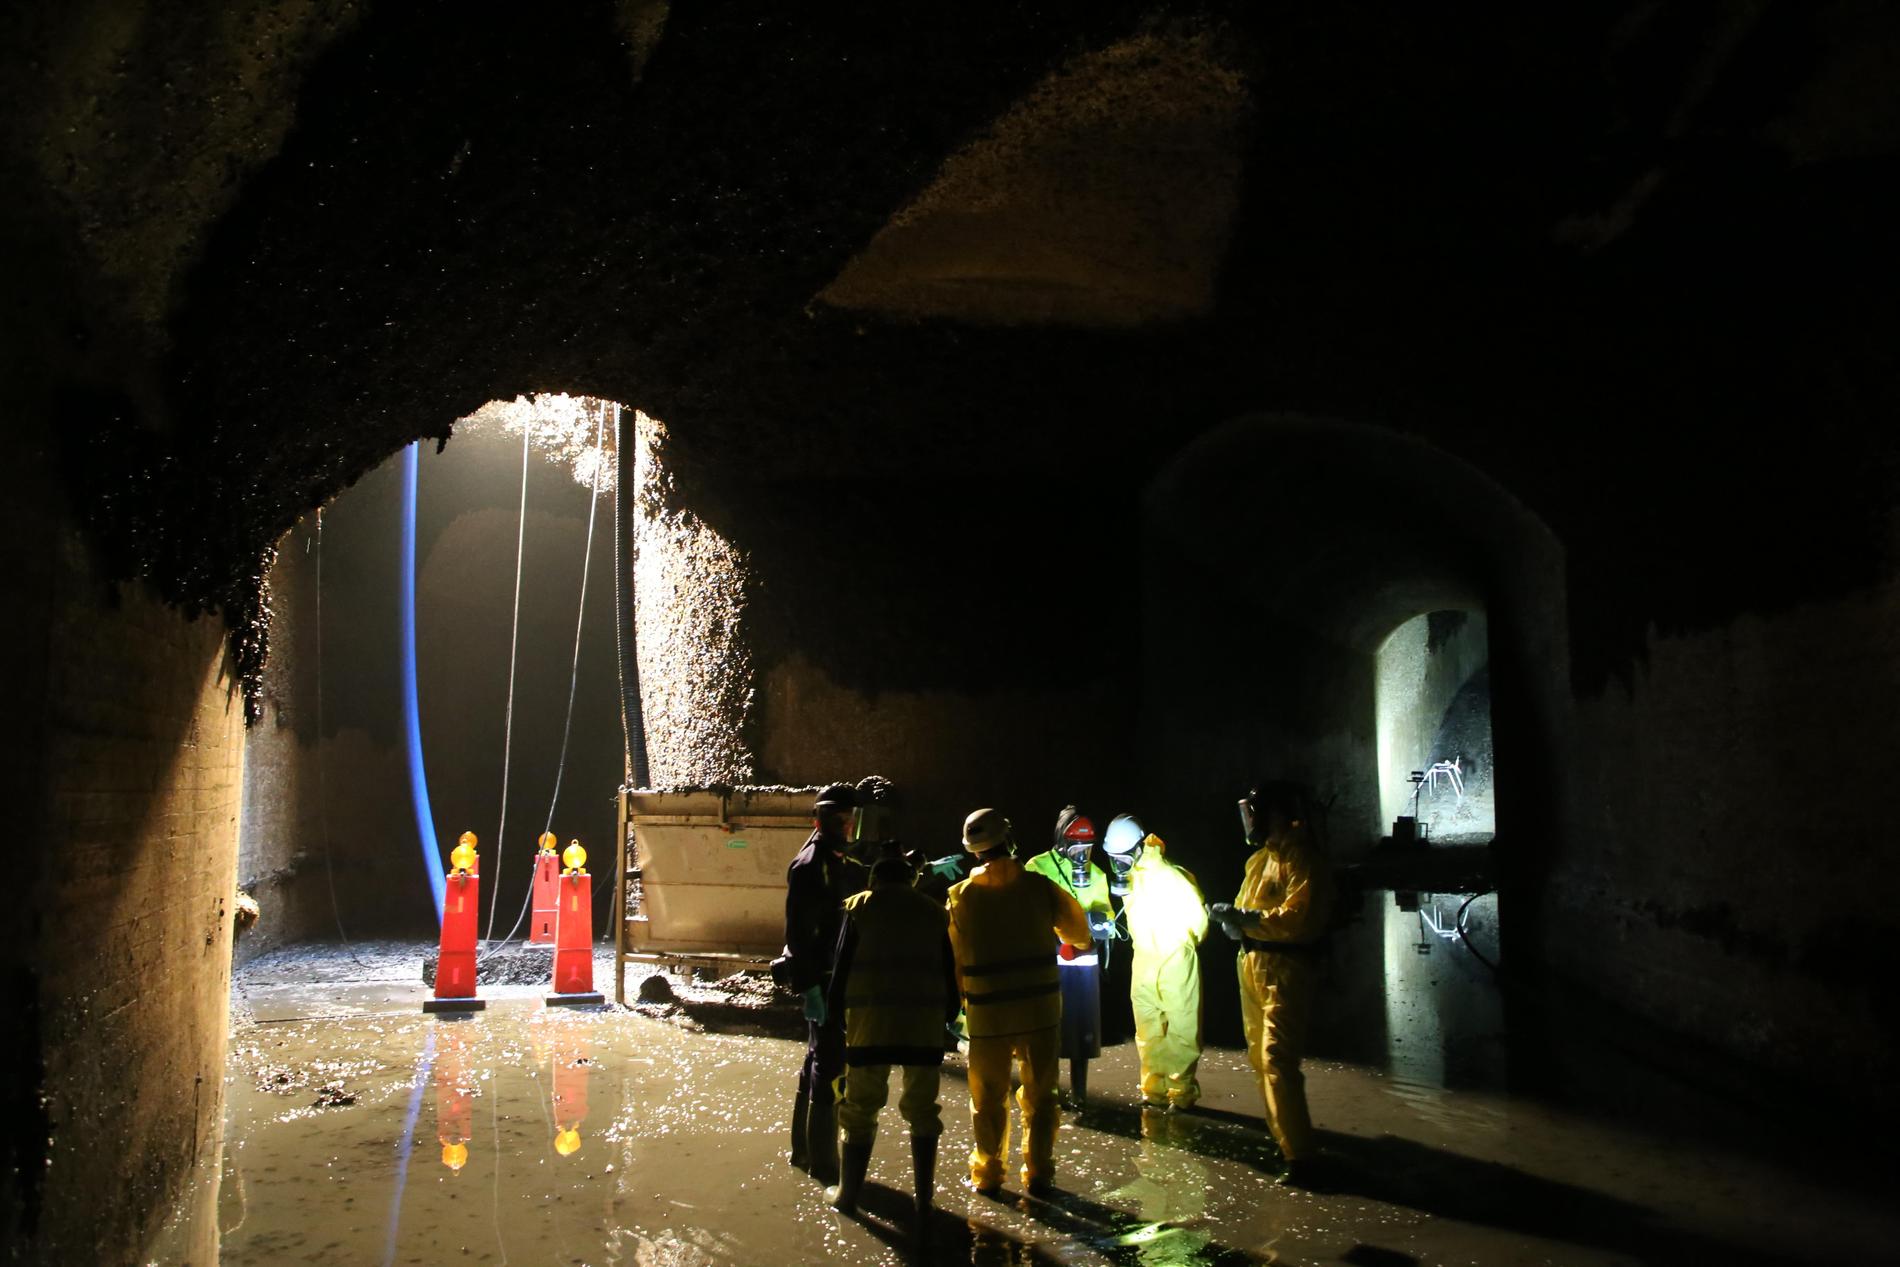 På Ringhals kärnkraftverk i Varberg finns gott om både energi och musslor. I kylvattentunnlar som leder till reaktorerna frodas blötdjuren, något om varje år leder till omfattande saneringar.